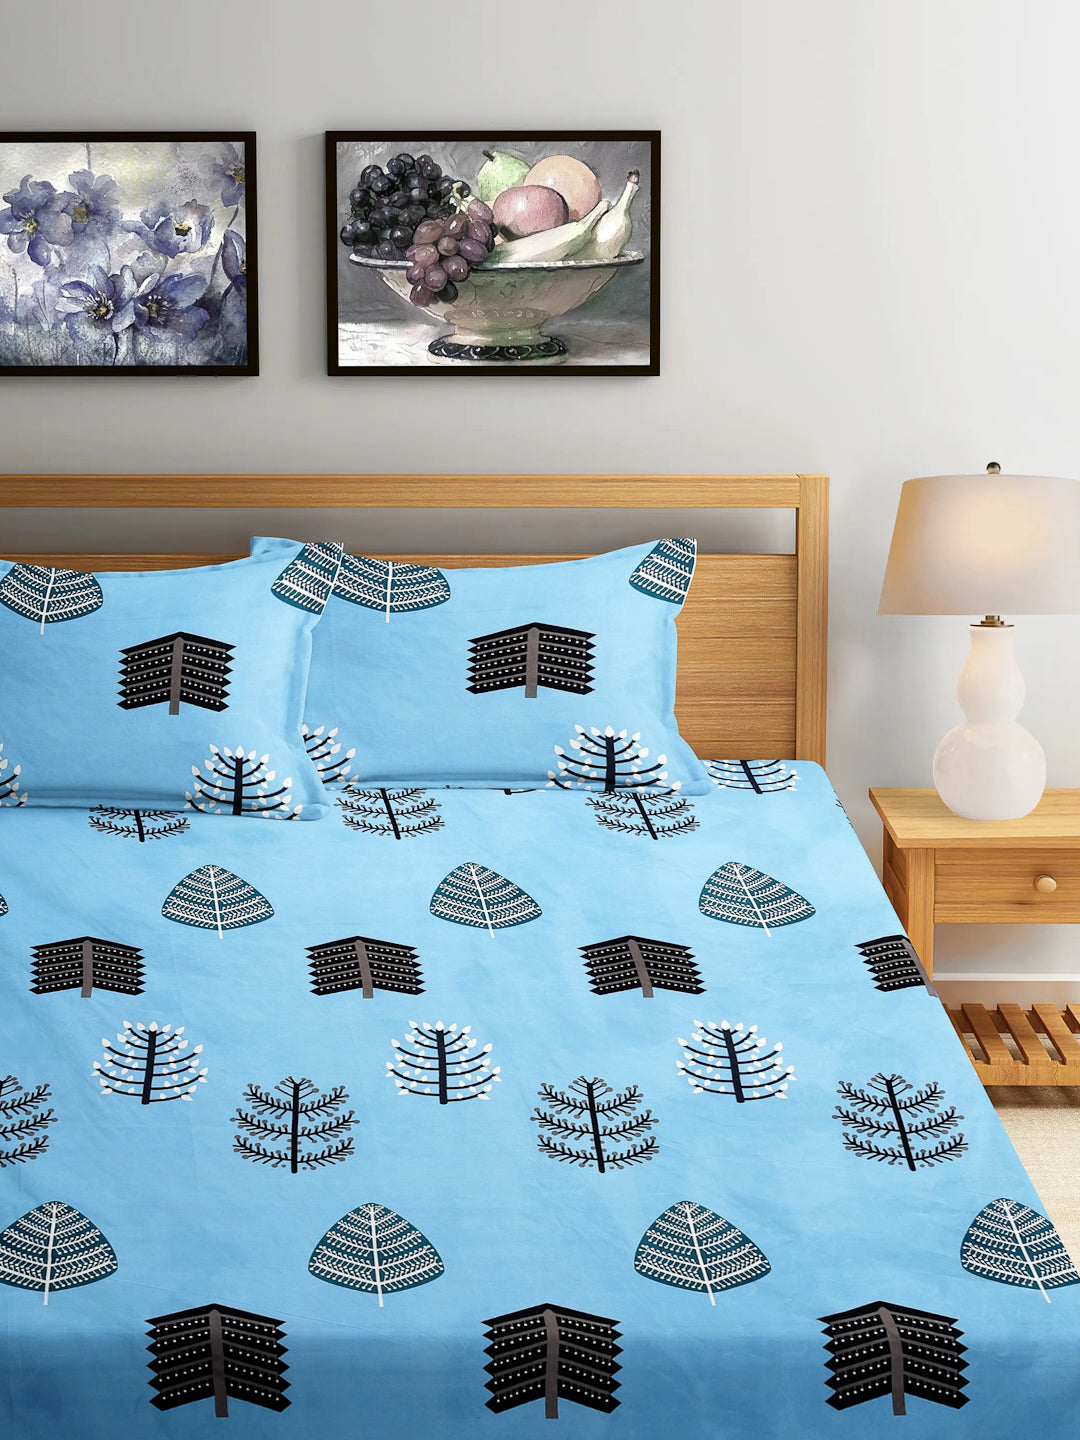 Arrabi Blue Leaf TC Cotton Blend Super King Size Bedsheet with 2 Pillow Covers (270 x 260 cm)